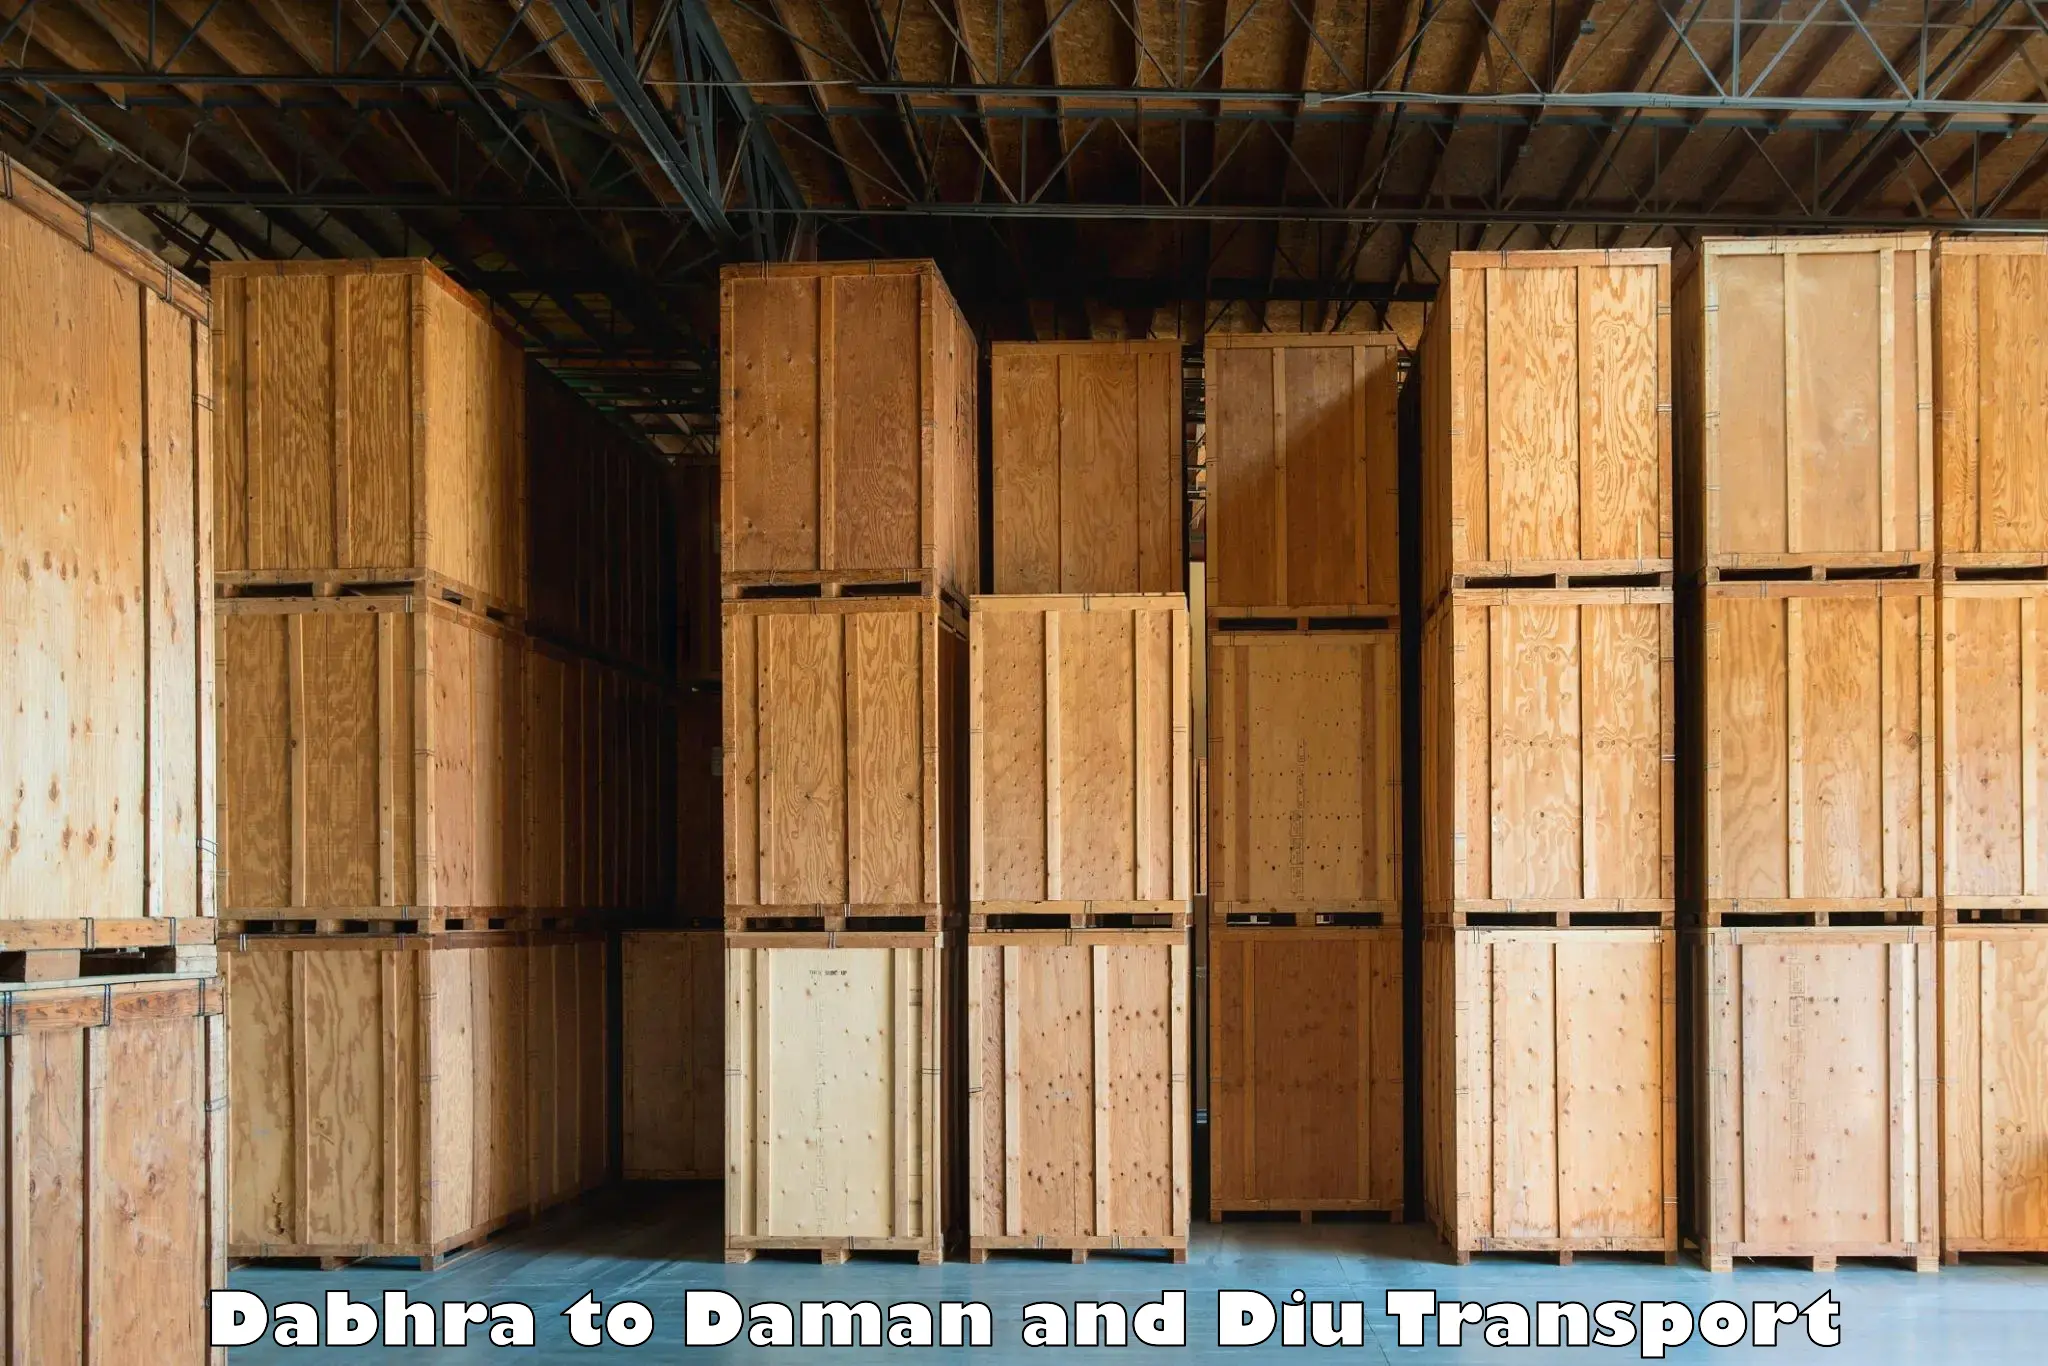 International cargo transportation services Dabhra to Diu